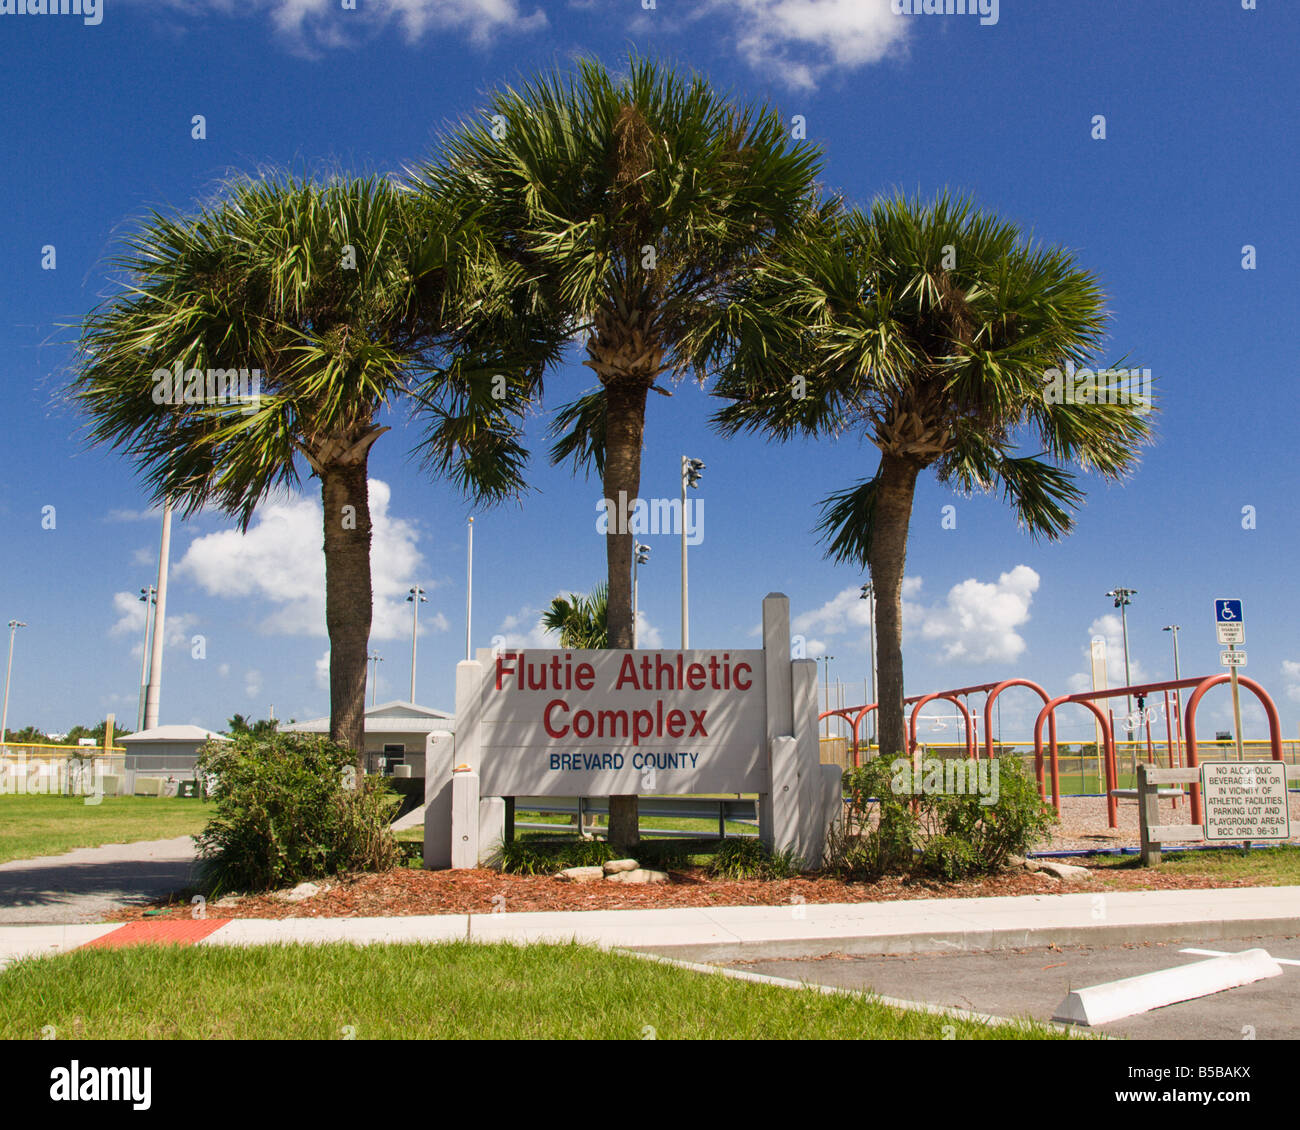 Le COMPLEXE SPORTIF FLUTIE À Melbourne Beach en Floride est nommé d'APRÈS DOUG FLUTIE DE BOSTON COLLEGE ET LA NFL Banque D'Images